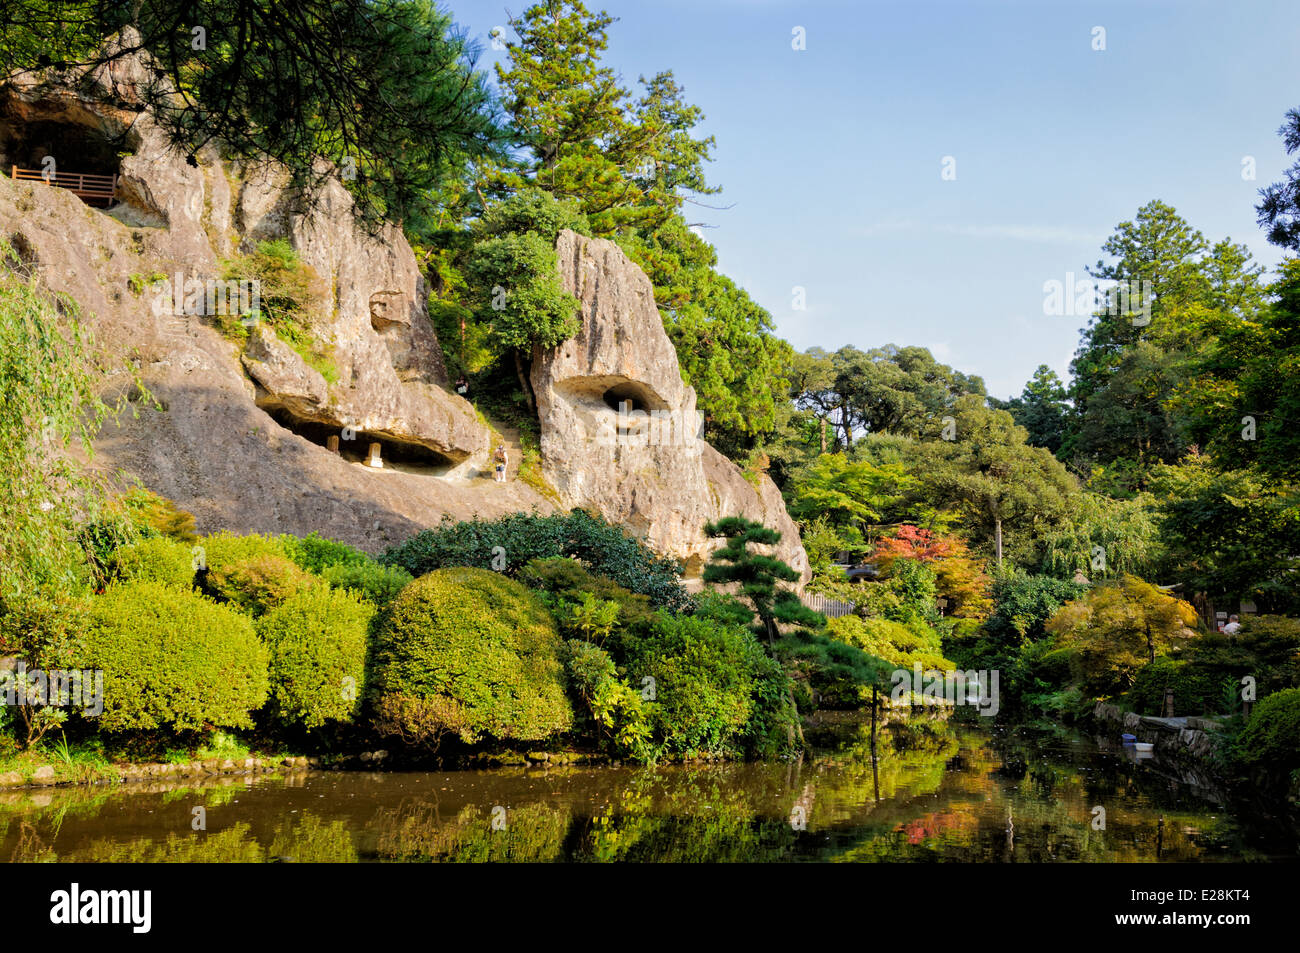 Tempio giapponese giardino. Giardini come queste sono belle e antiche. Foto Stock